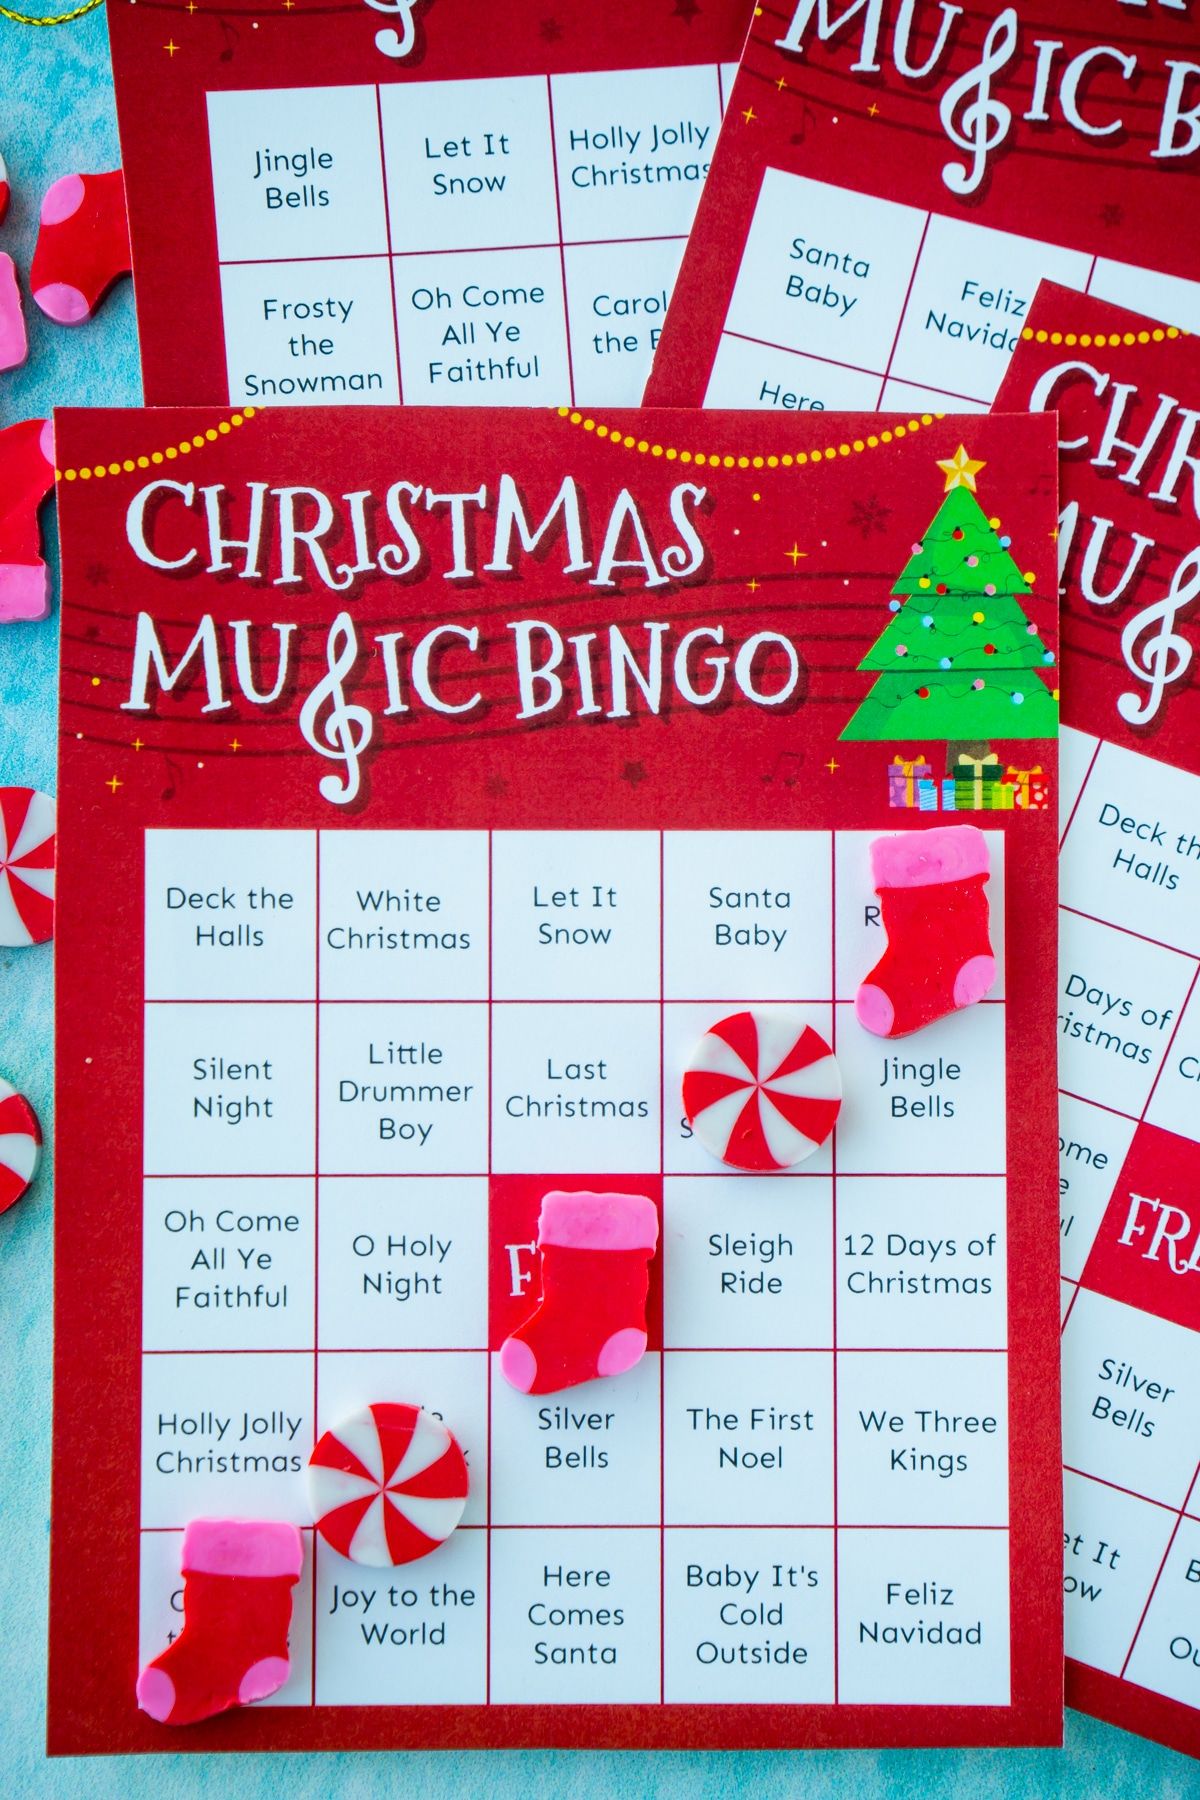 Tarjeta de bingo de música navideña con un bingo hecho con borradores de Navidad